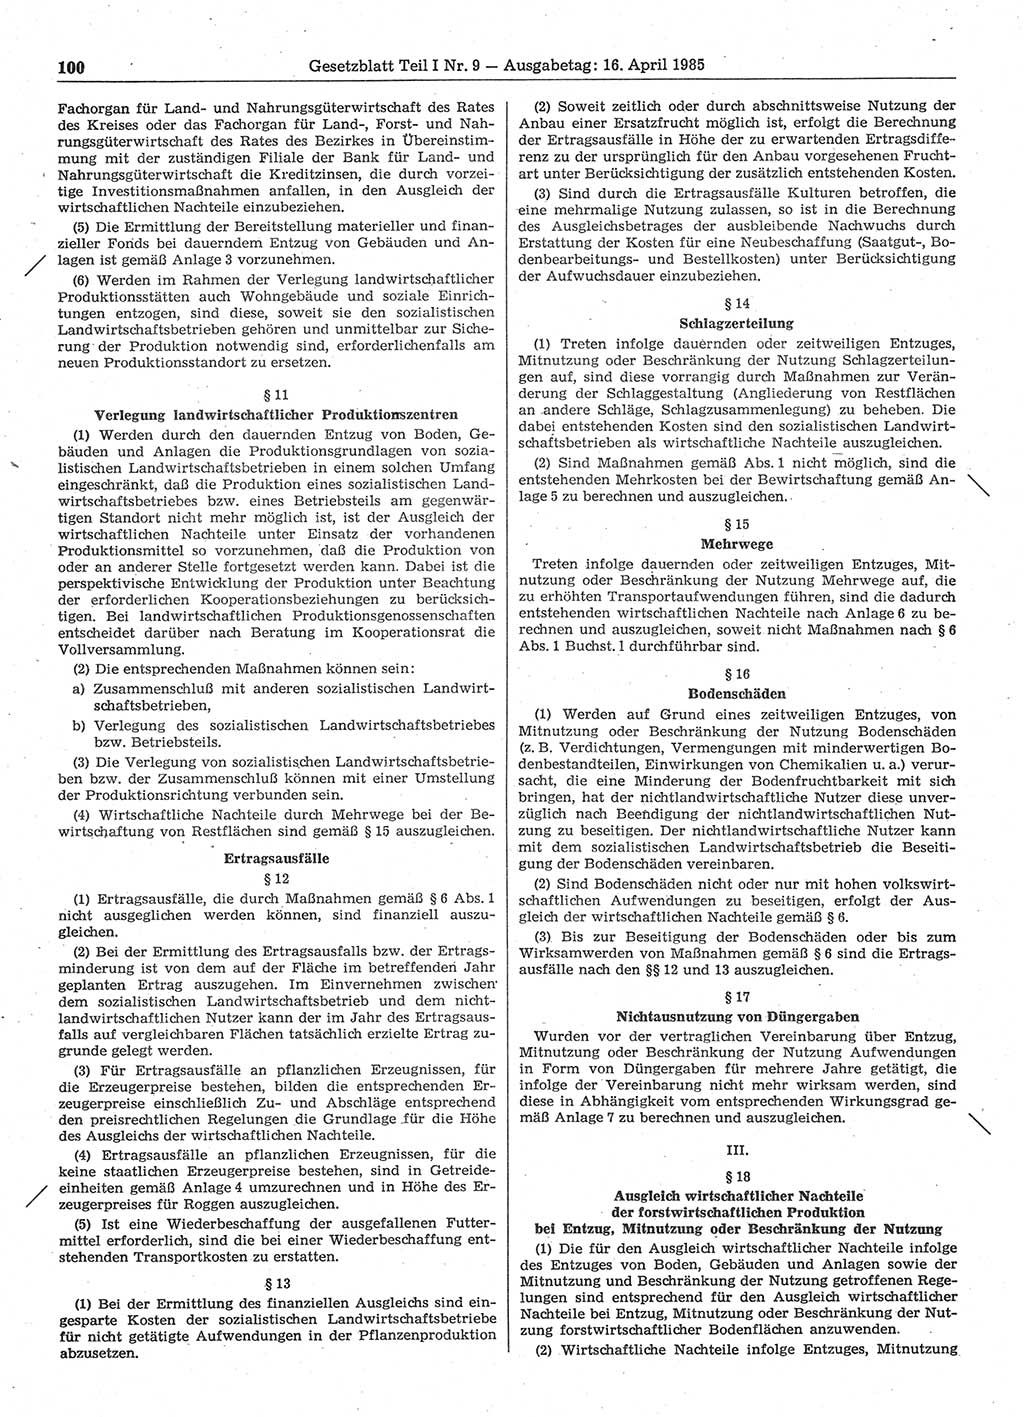 Gesetzblatt (GBl.) der Deutschen Demokratischen Republik (DDR) Teil Ⅰ 1985, Seite 100 (GBl. DDR Ⅰ 1985, S. 100)